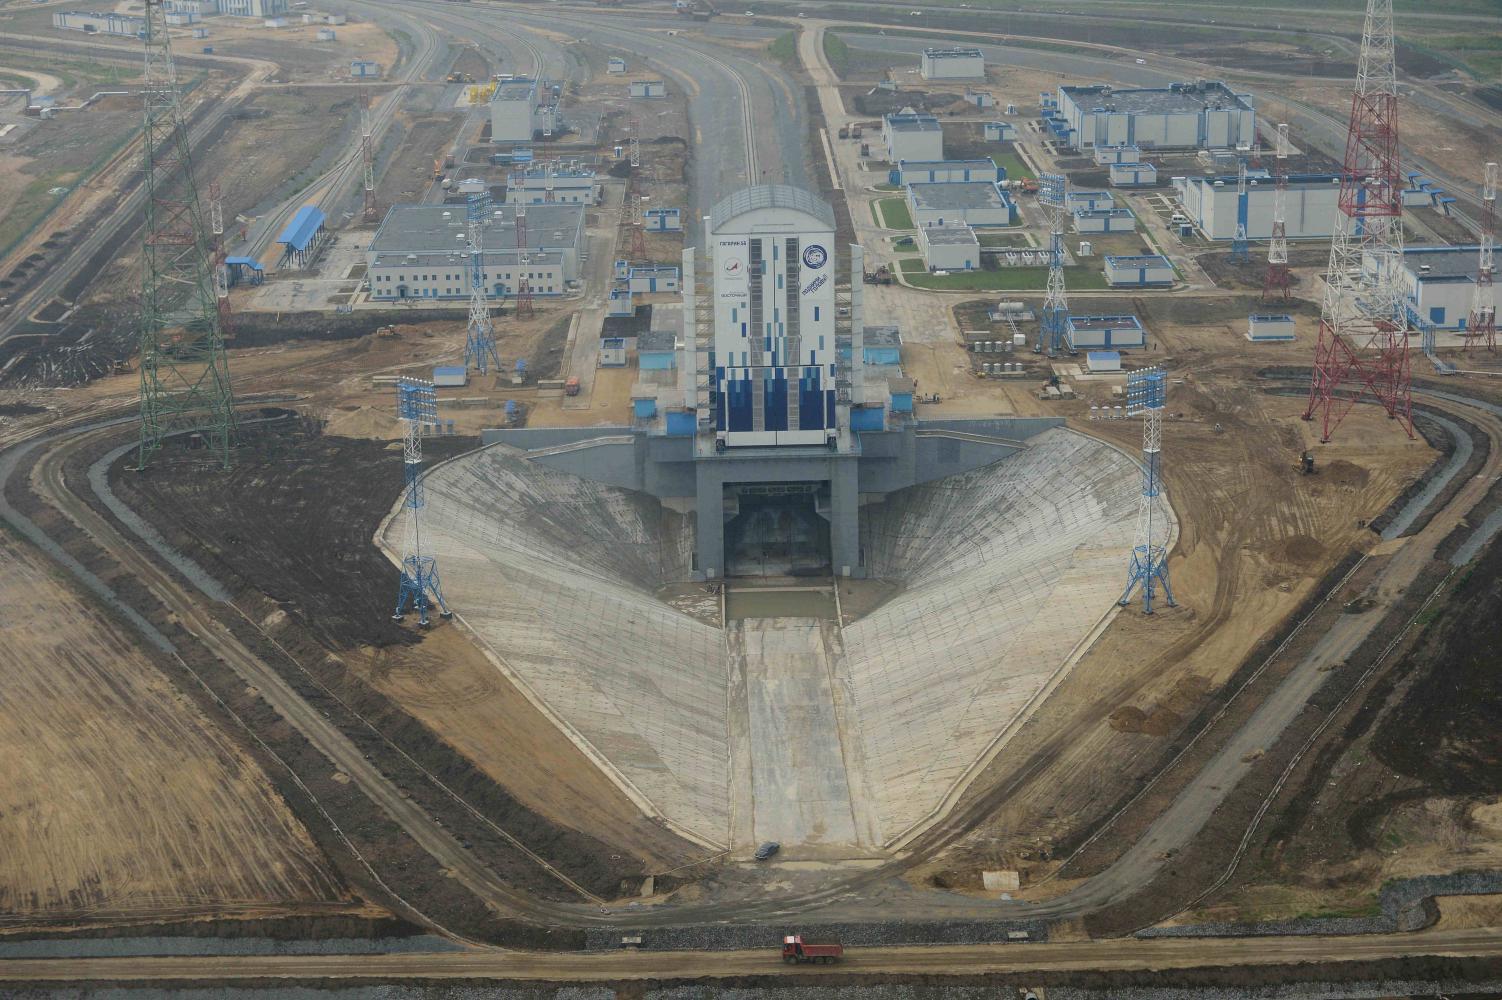 На строительстве космодрома "Восточный" похищено 11 млрд рублей - Песков